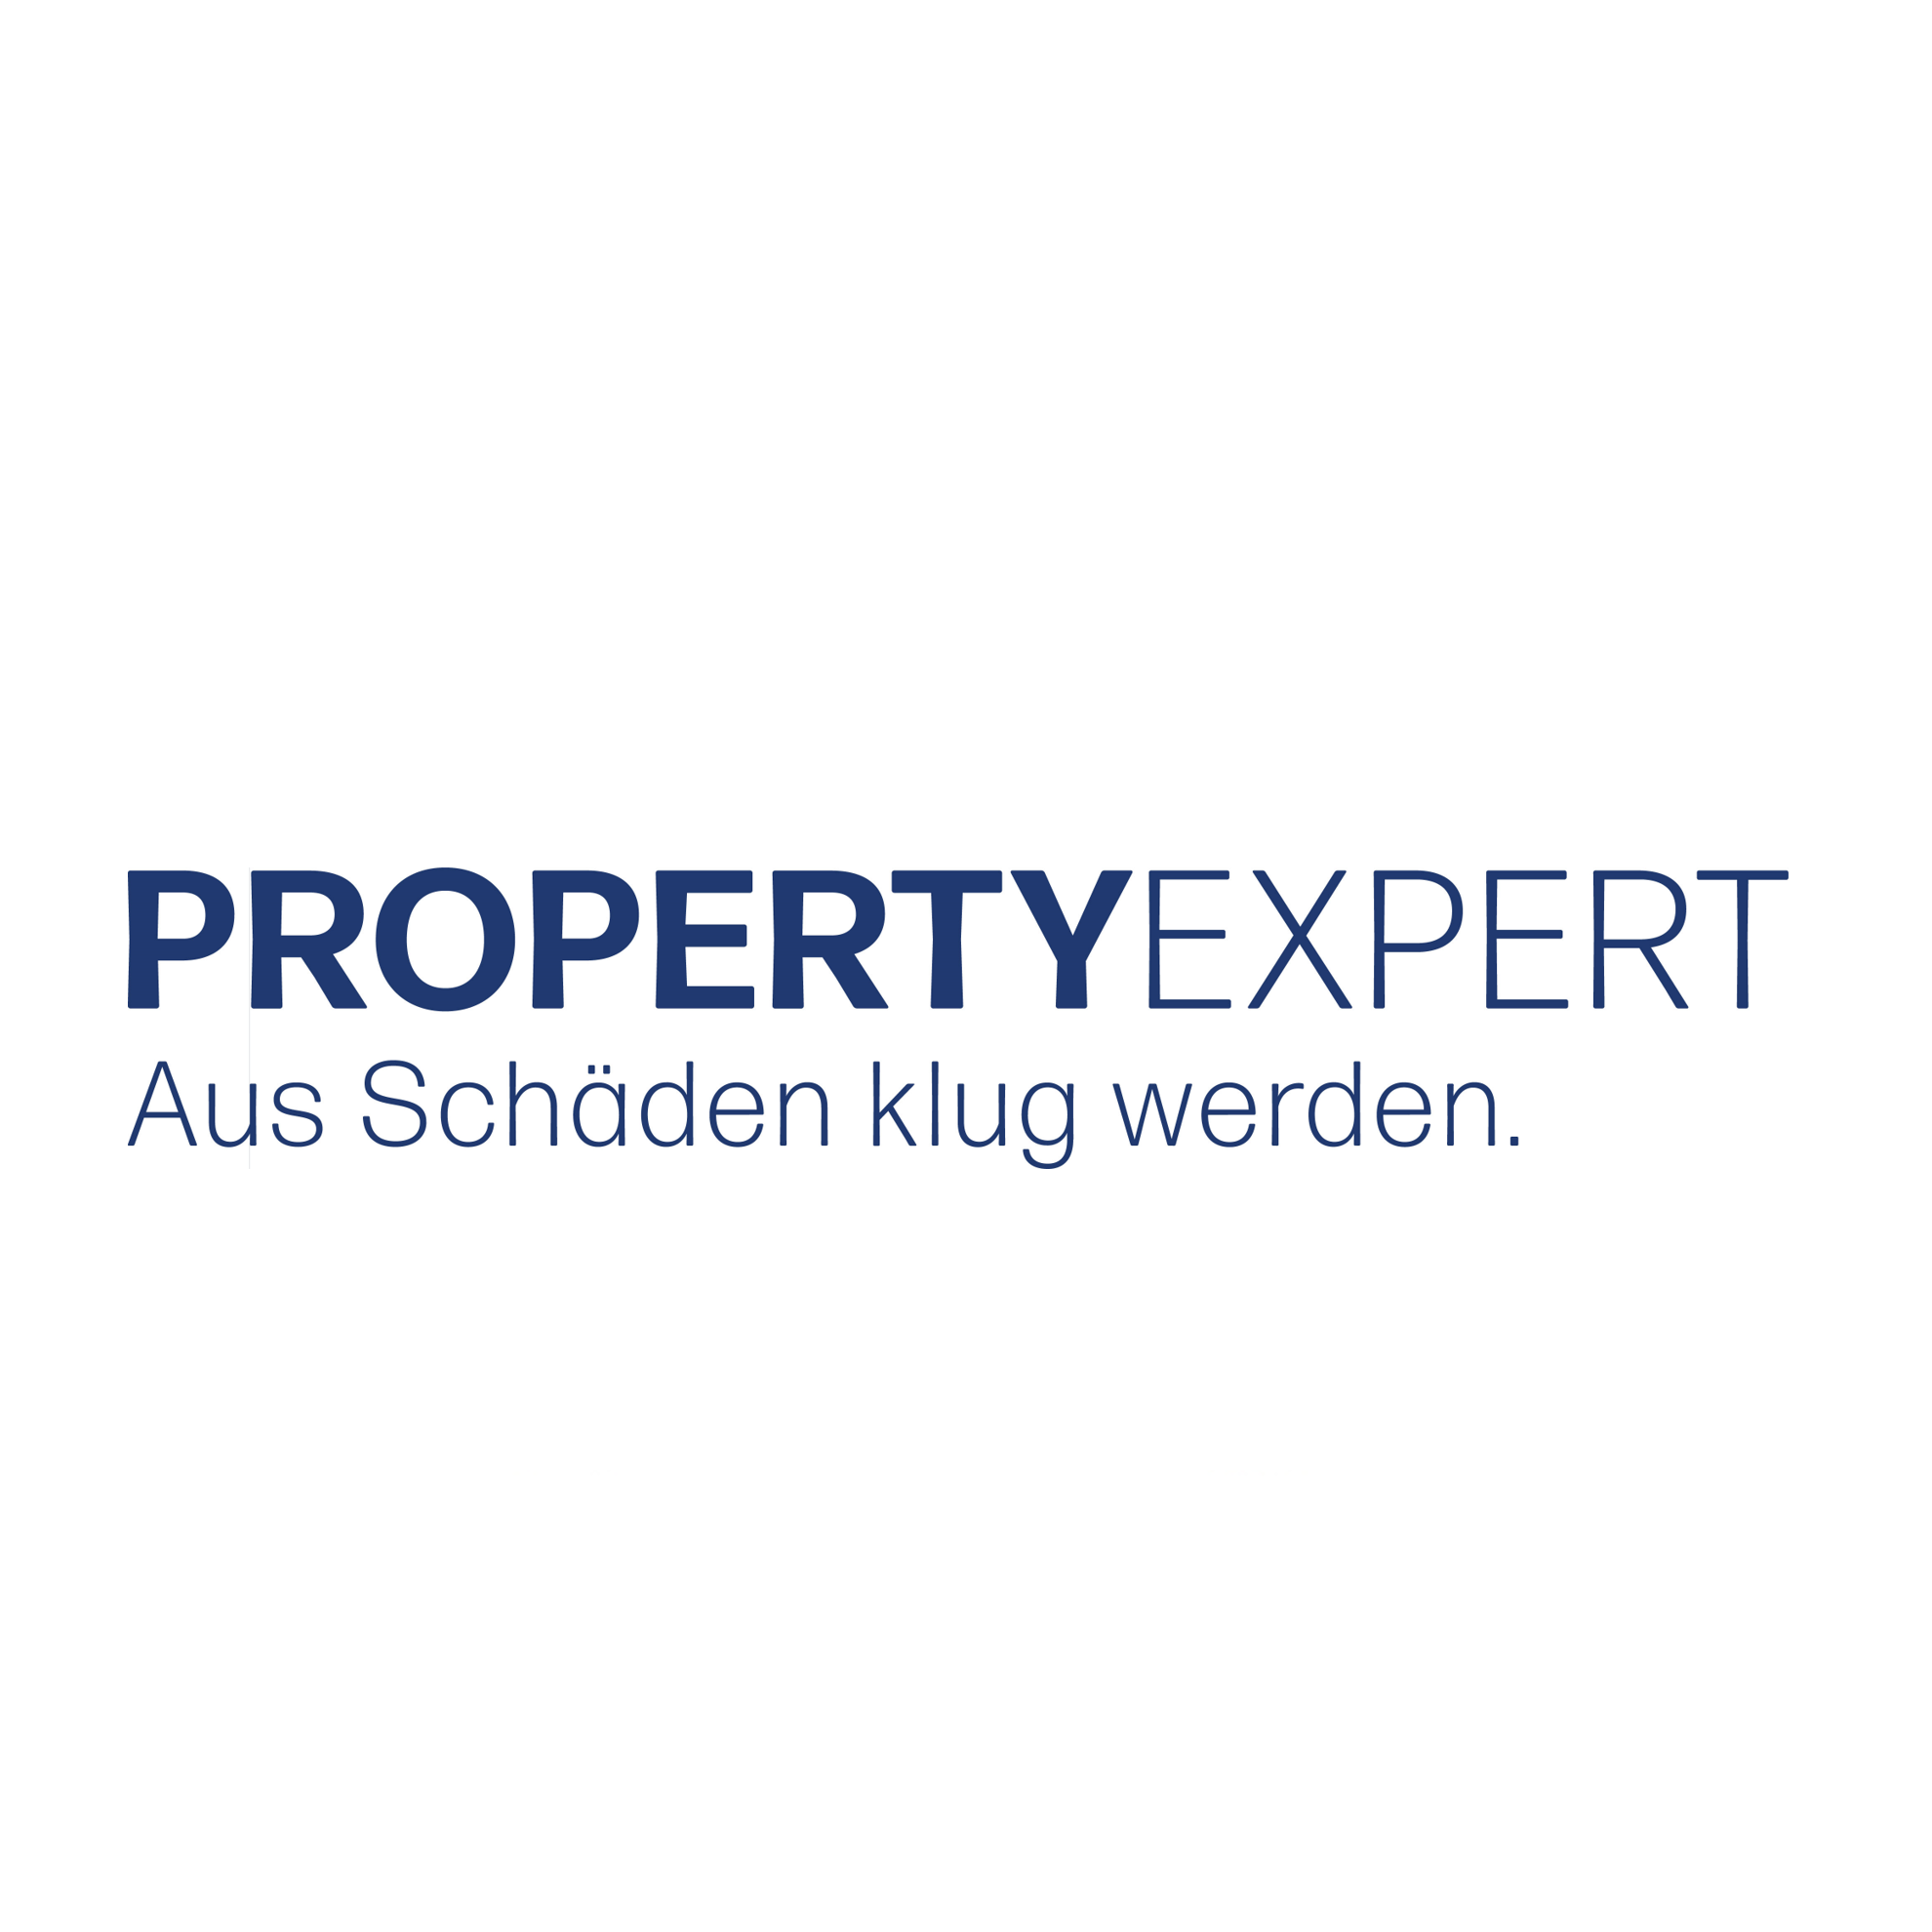 Partner: PropertyExpert